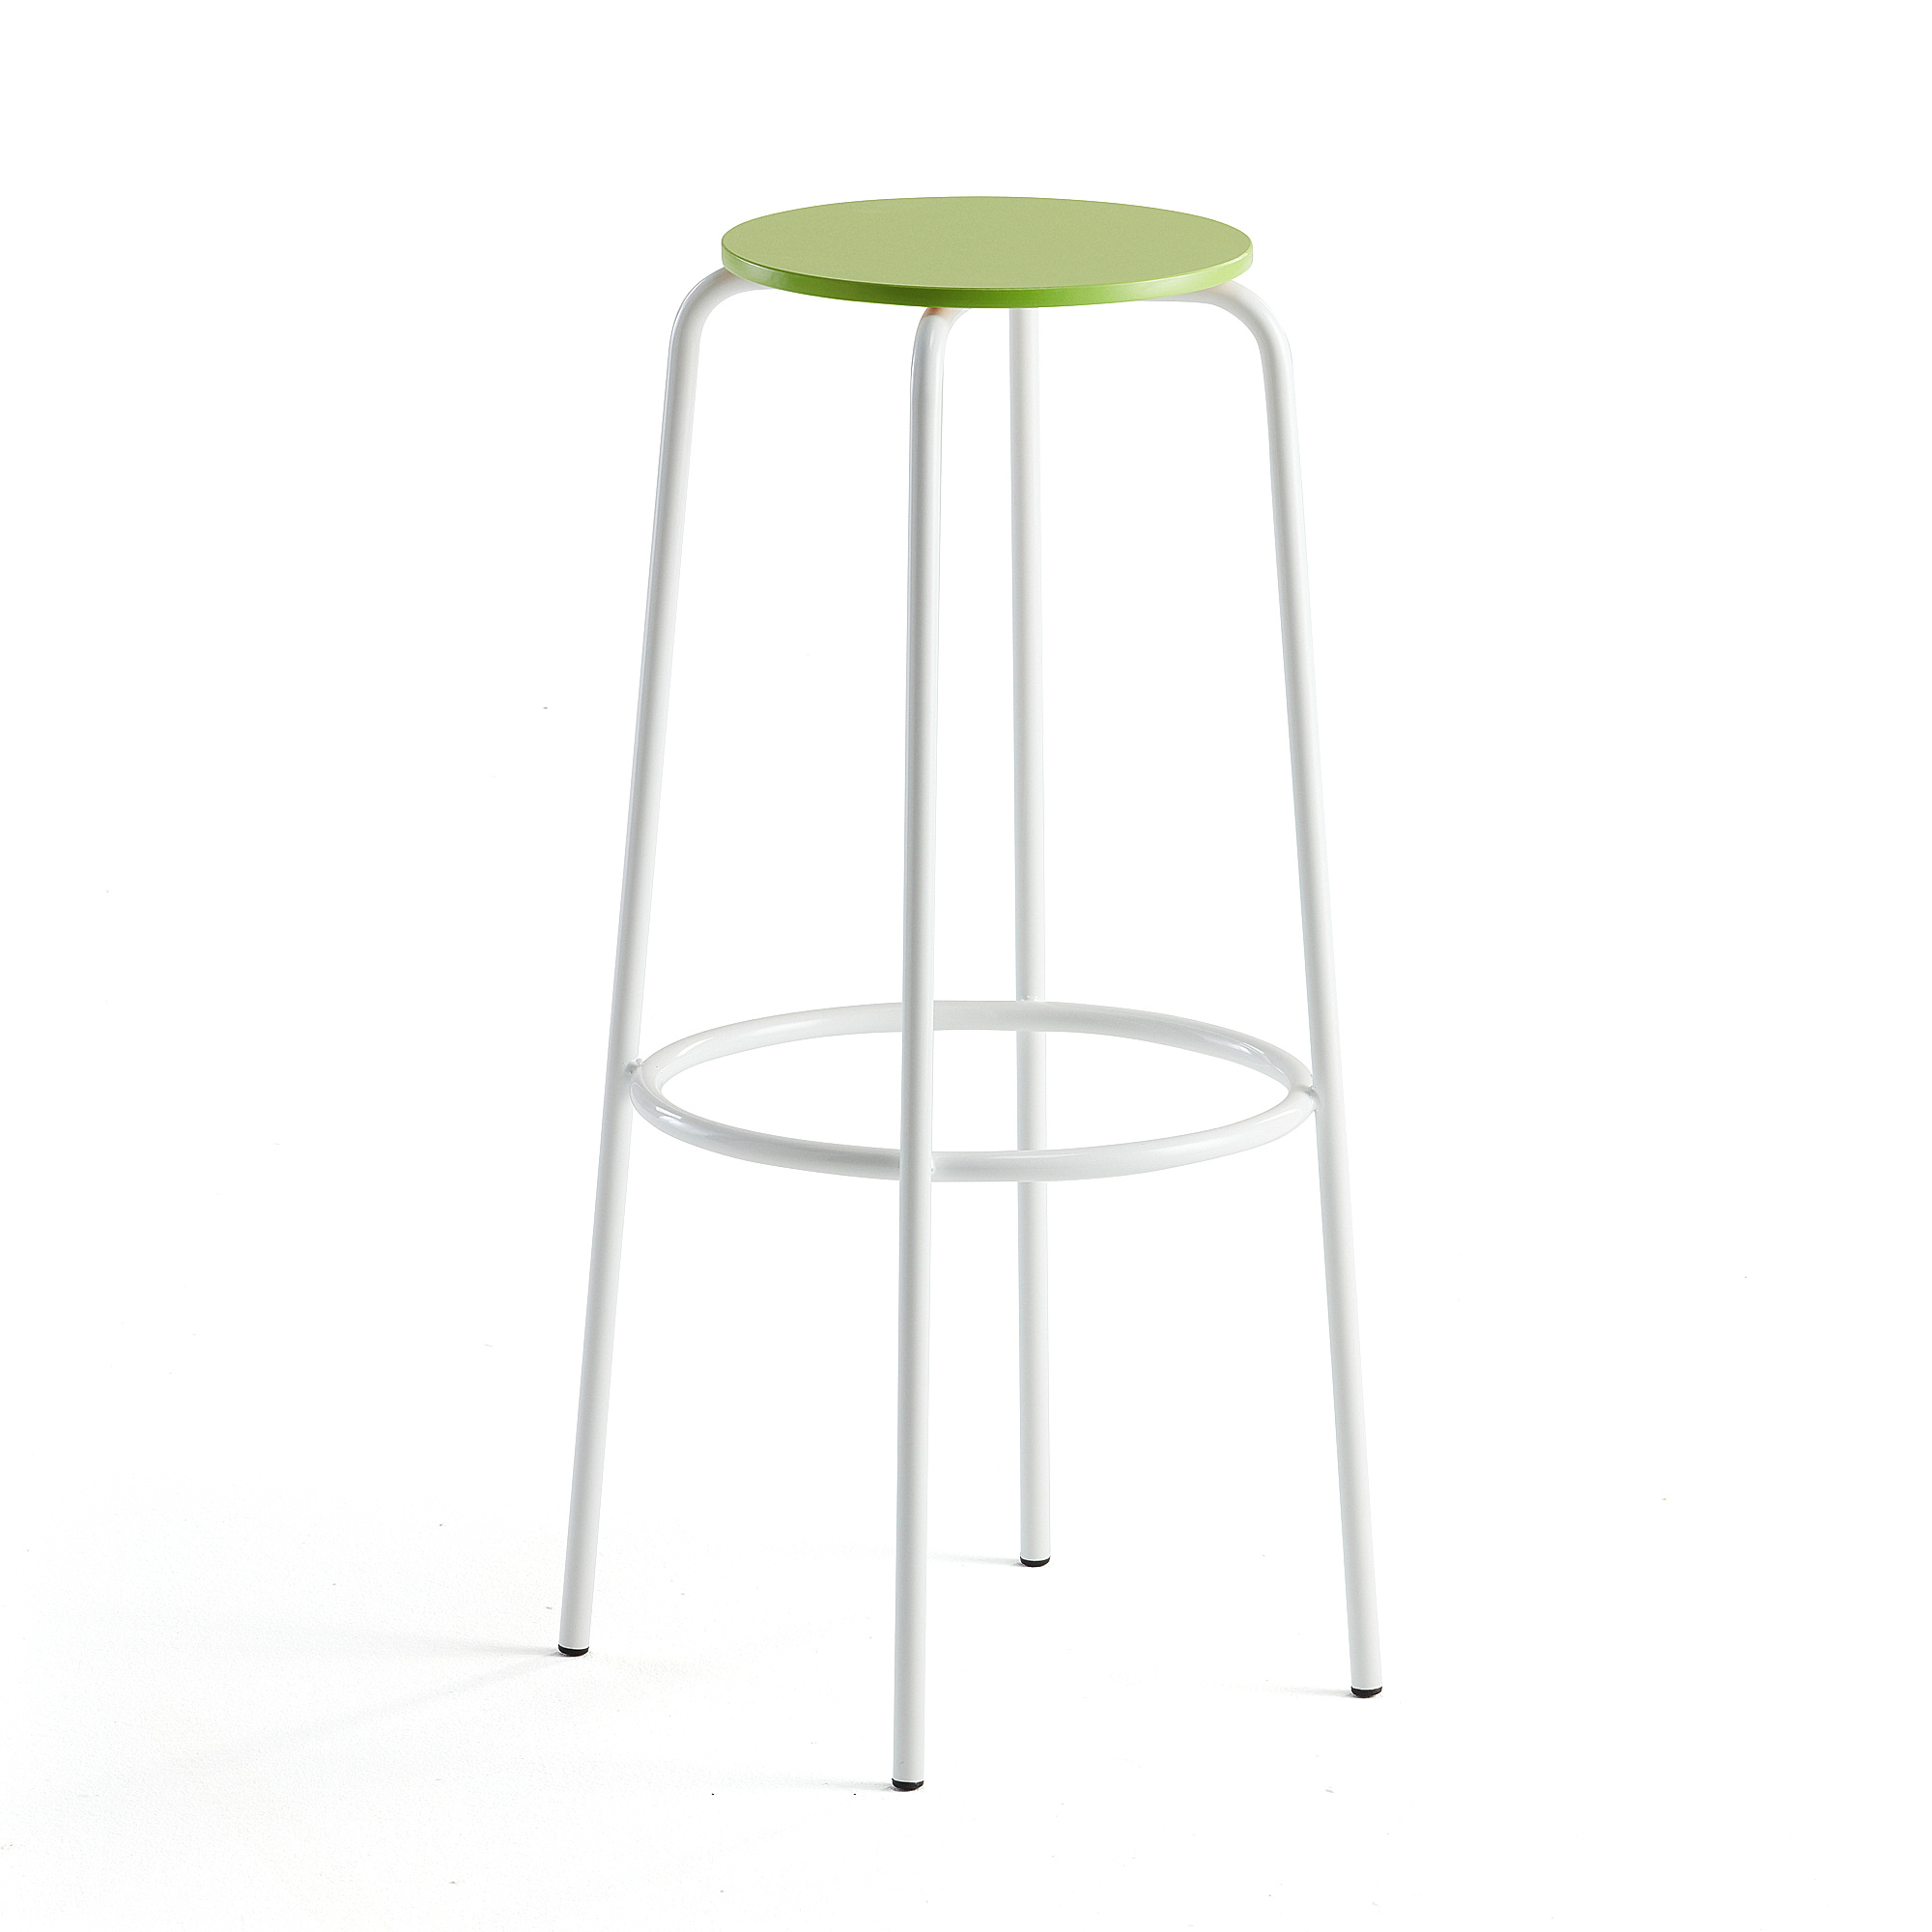 E-shop Barová stolička TIMMY, biely rám, zelený sedák, V 830 mm